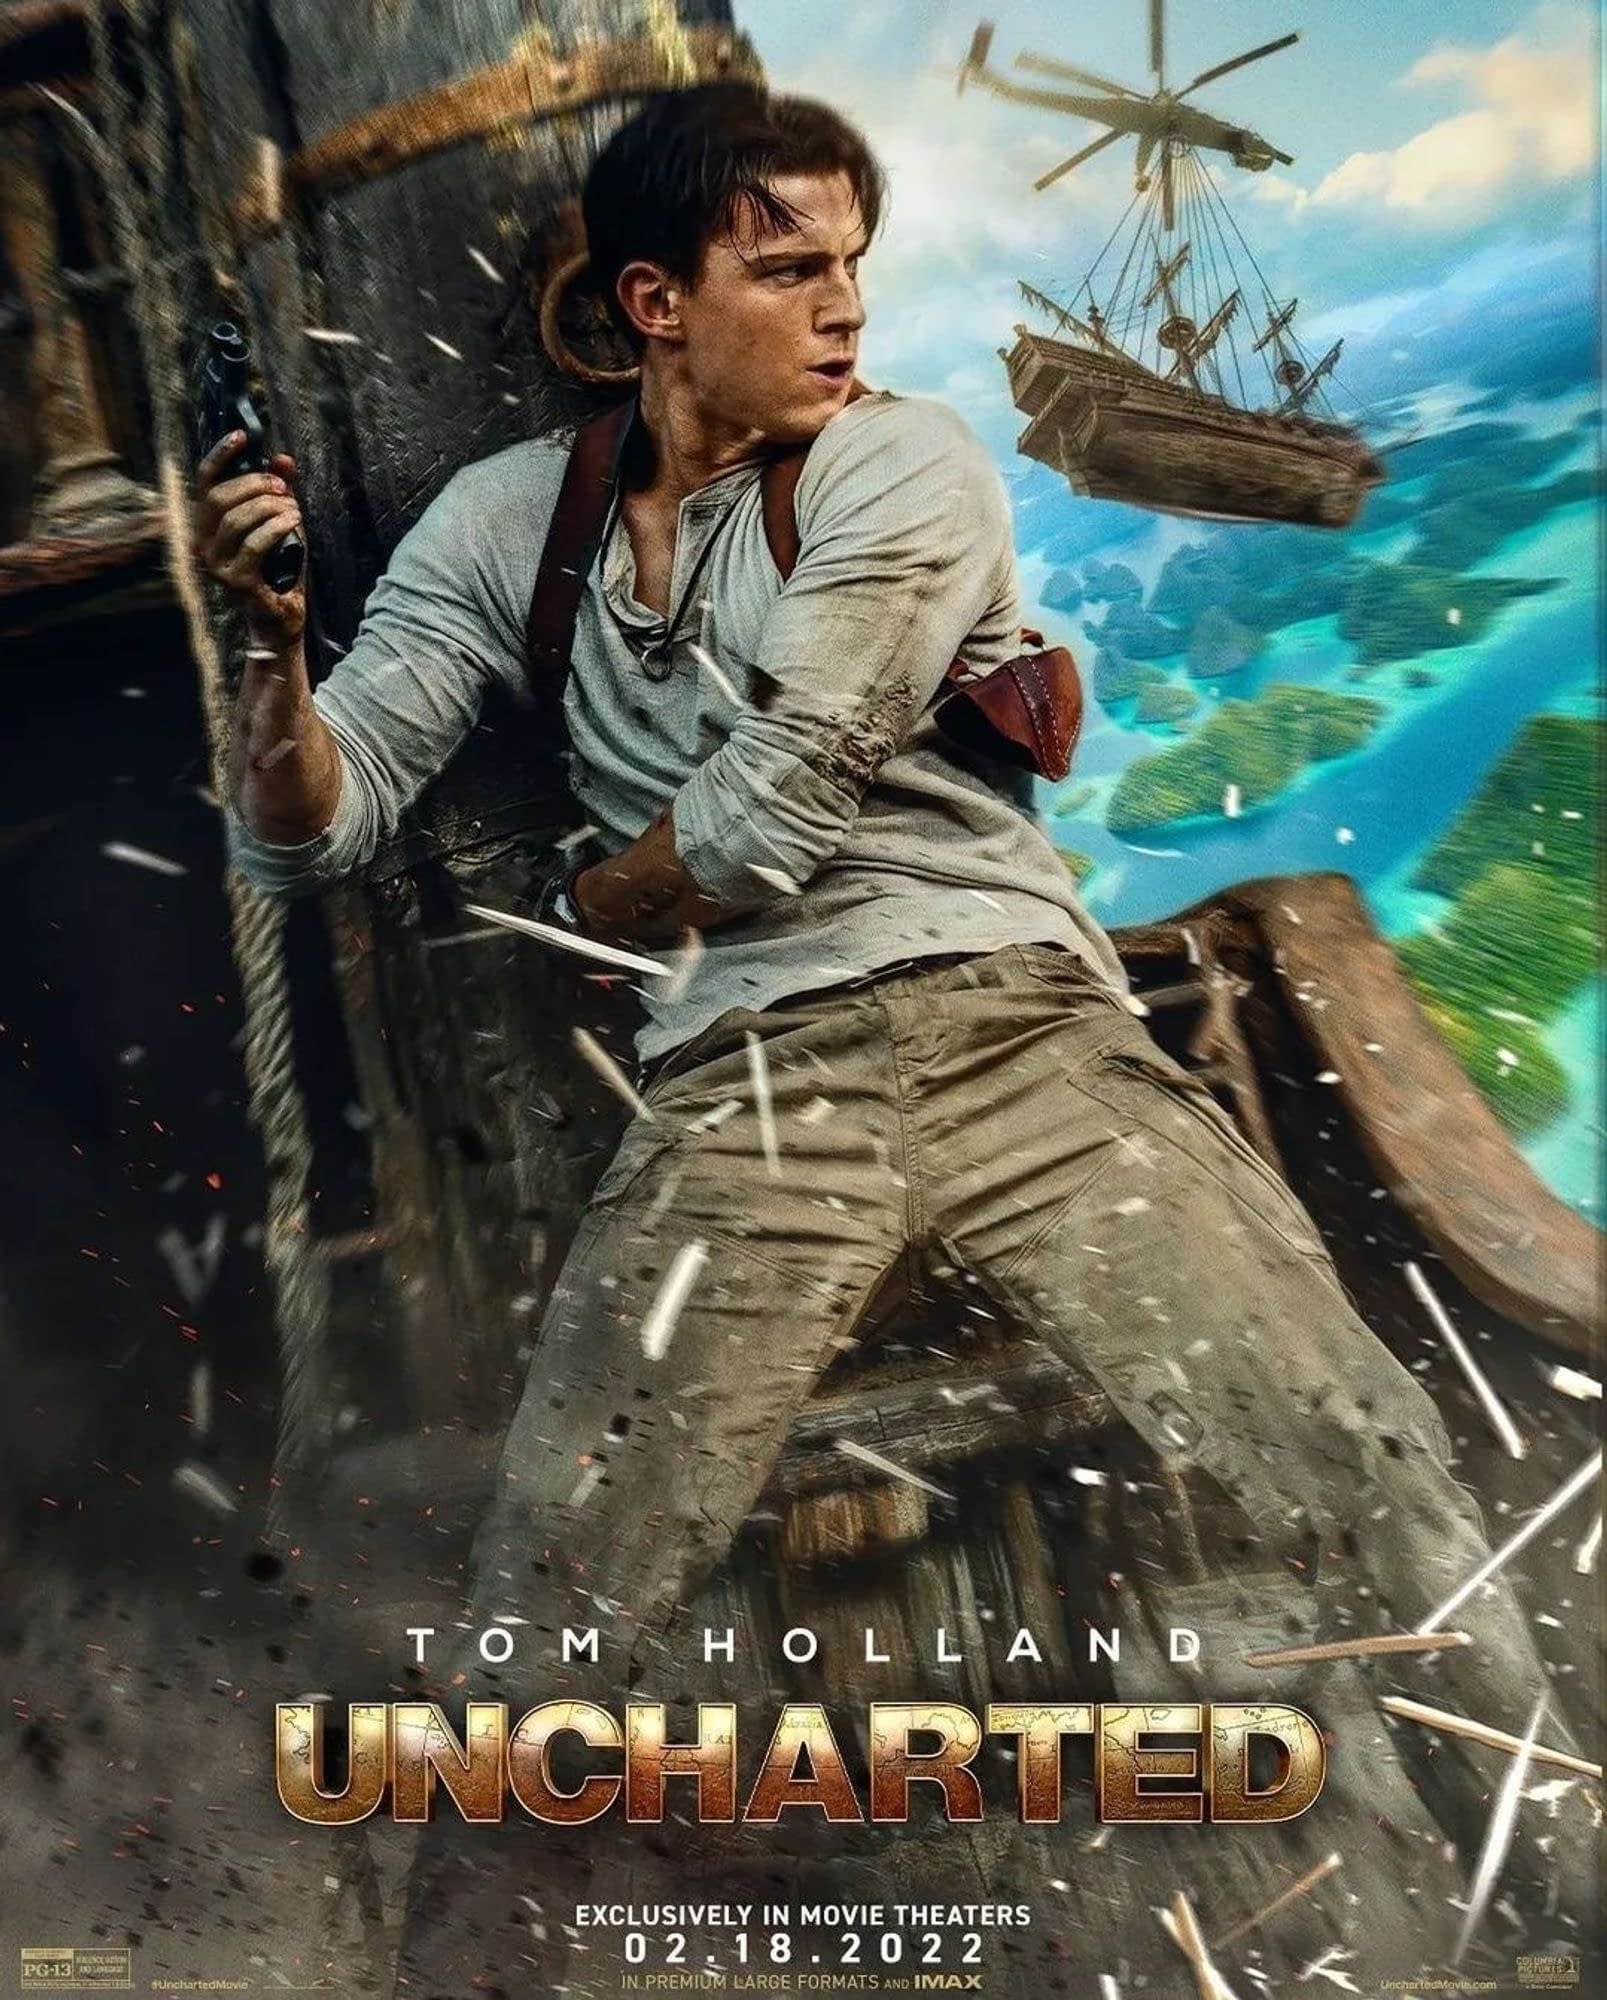 Uncharted (2022) - Metacritic reviews - IMDb